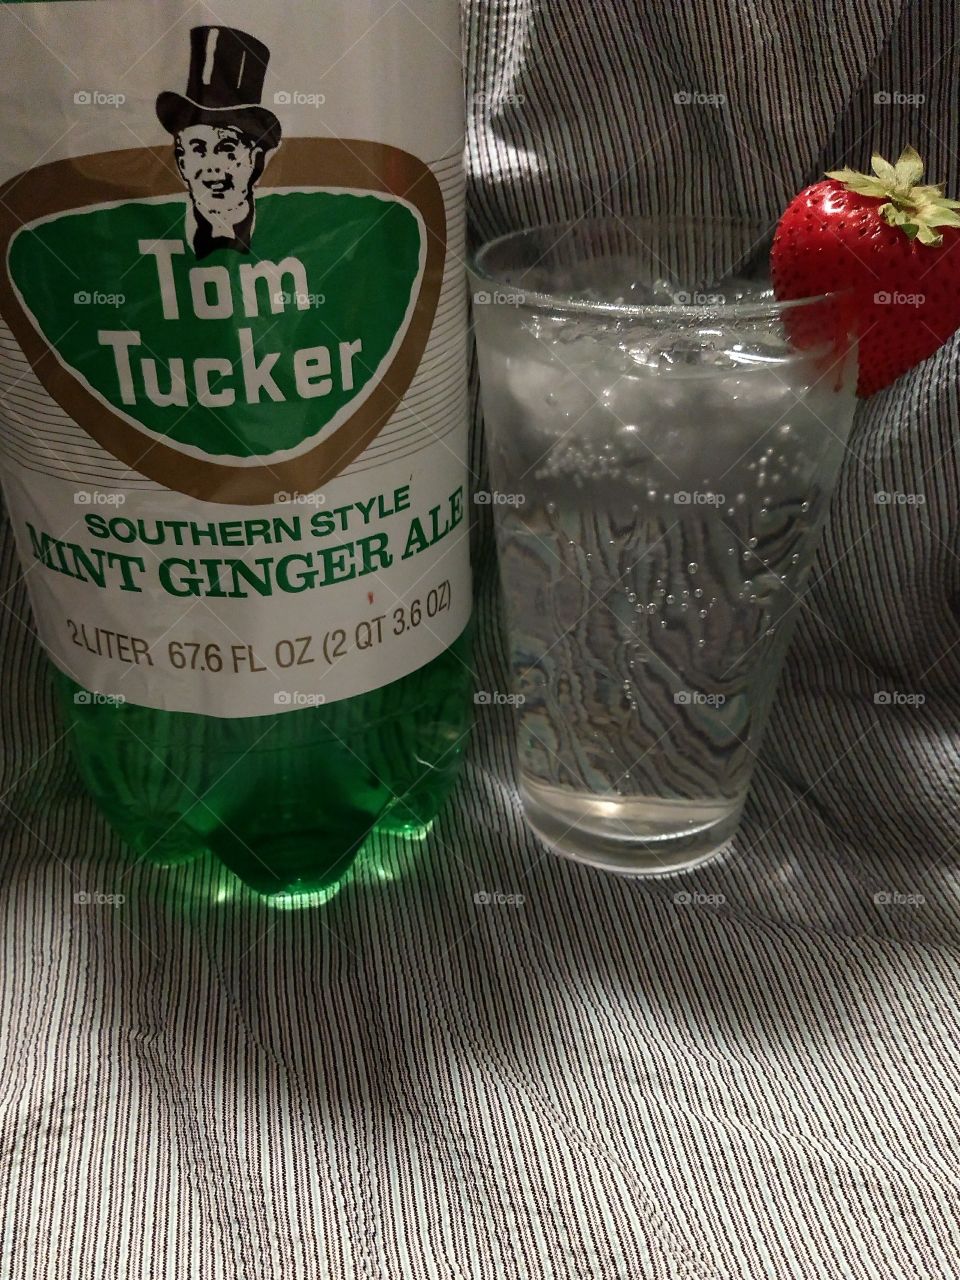 Tom Tucker mint ginger ale sweet dreams